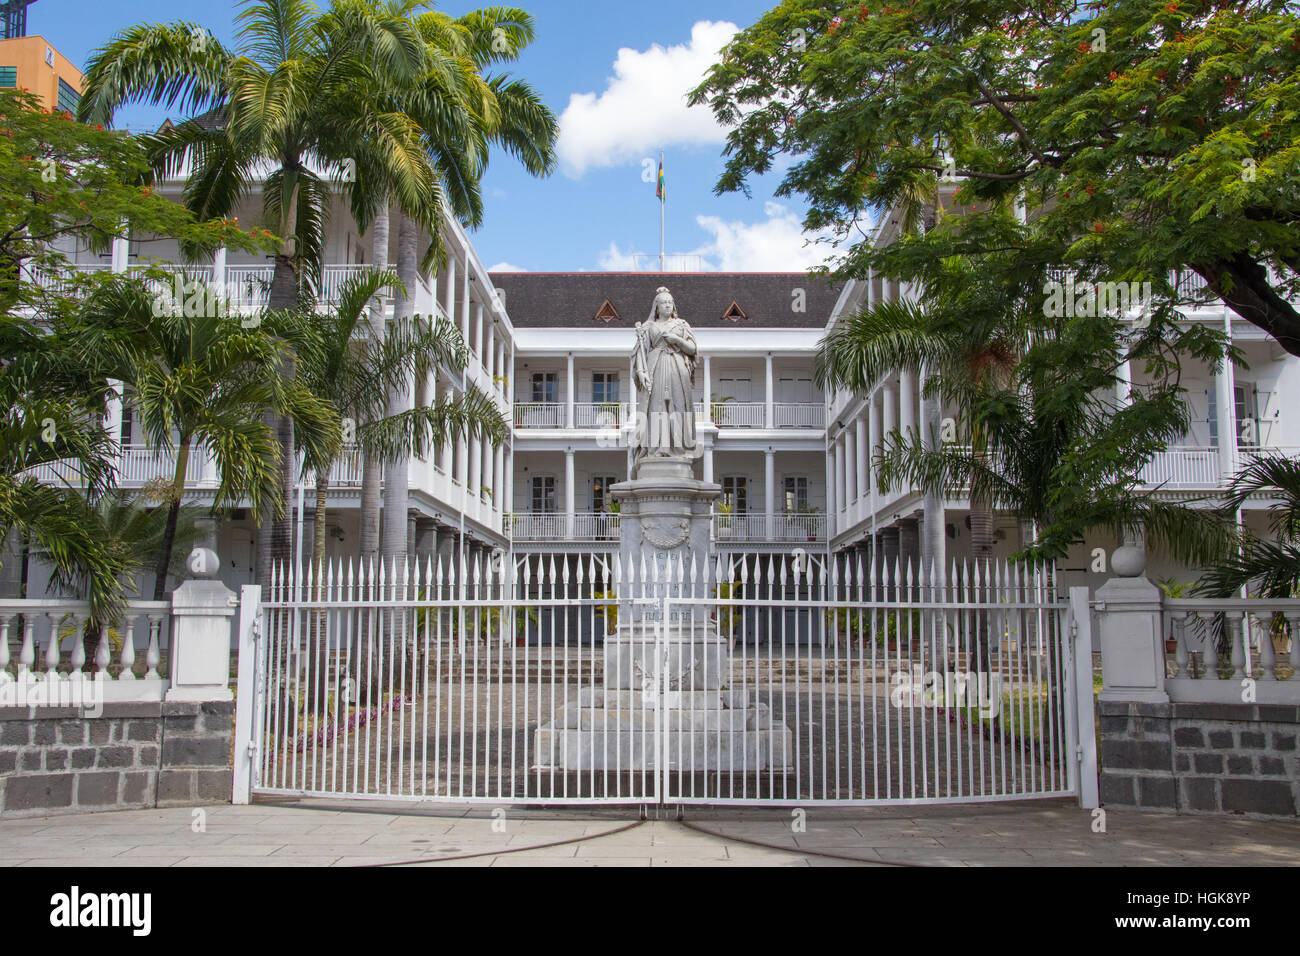 Statue de la reine Victoria, Government House, bâtiment colonial français encore utilisées par l'actuel gouvernement, Port Louis, Ile Maurice Banque D'Images